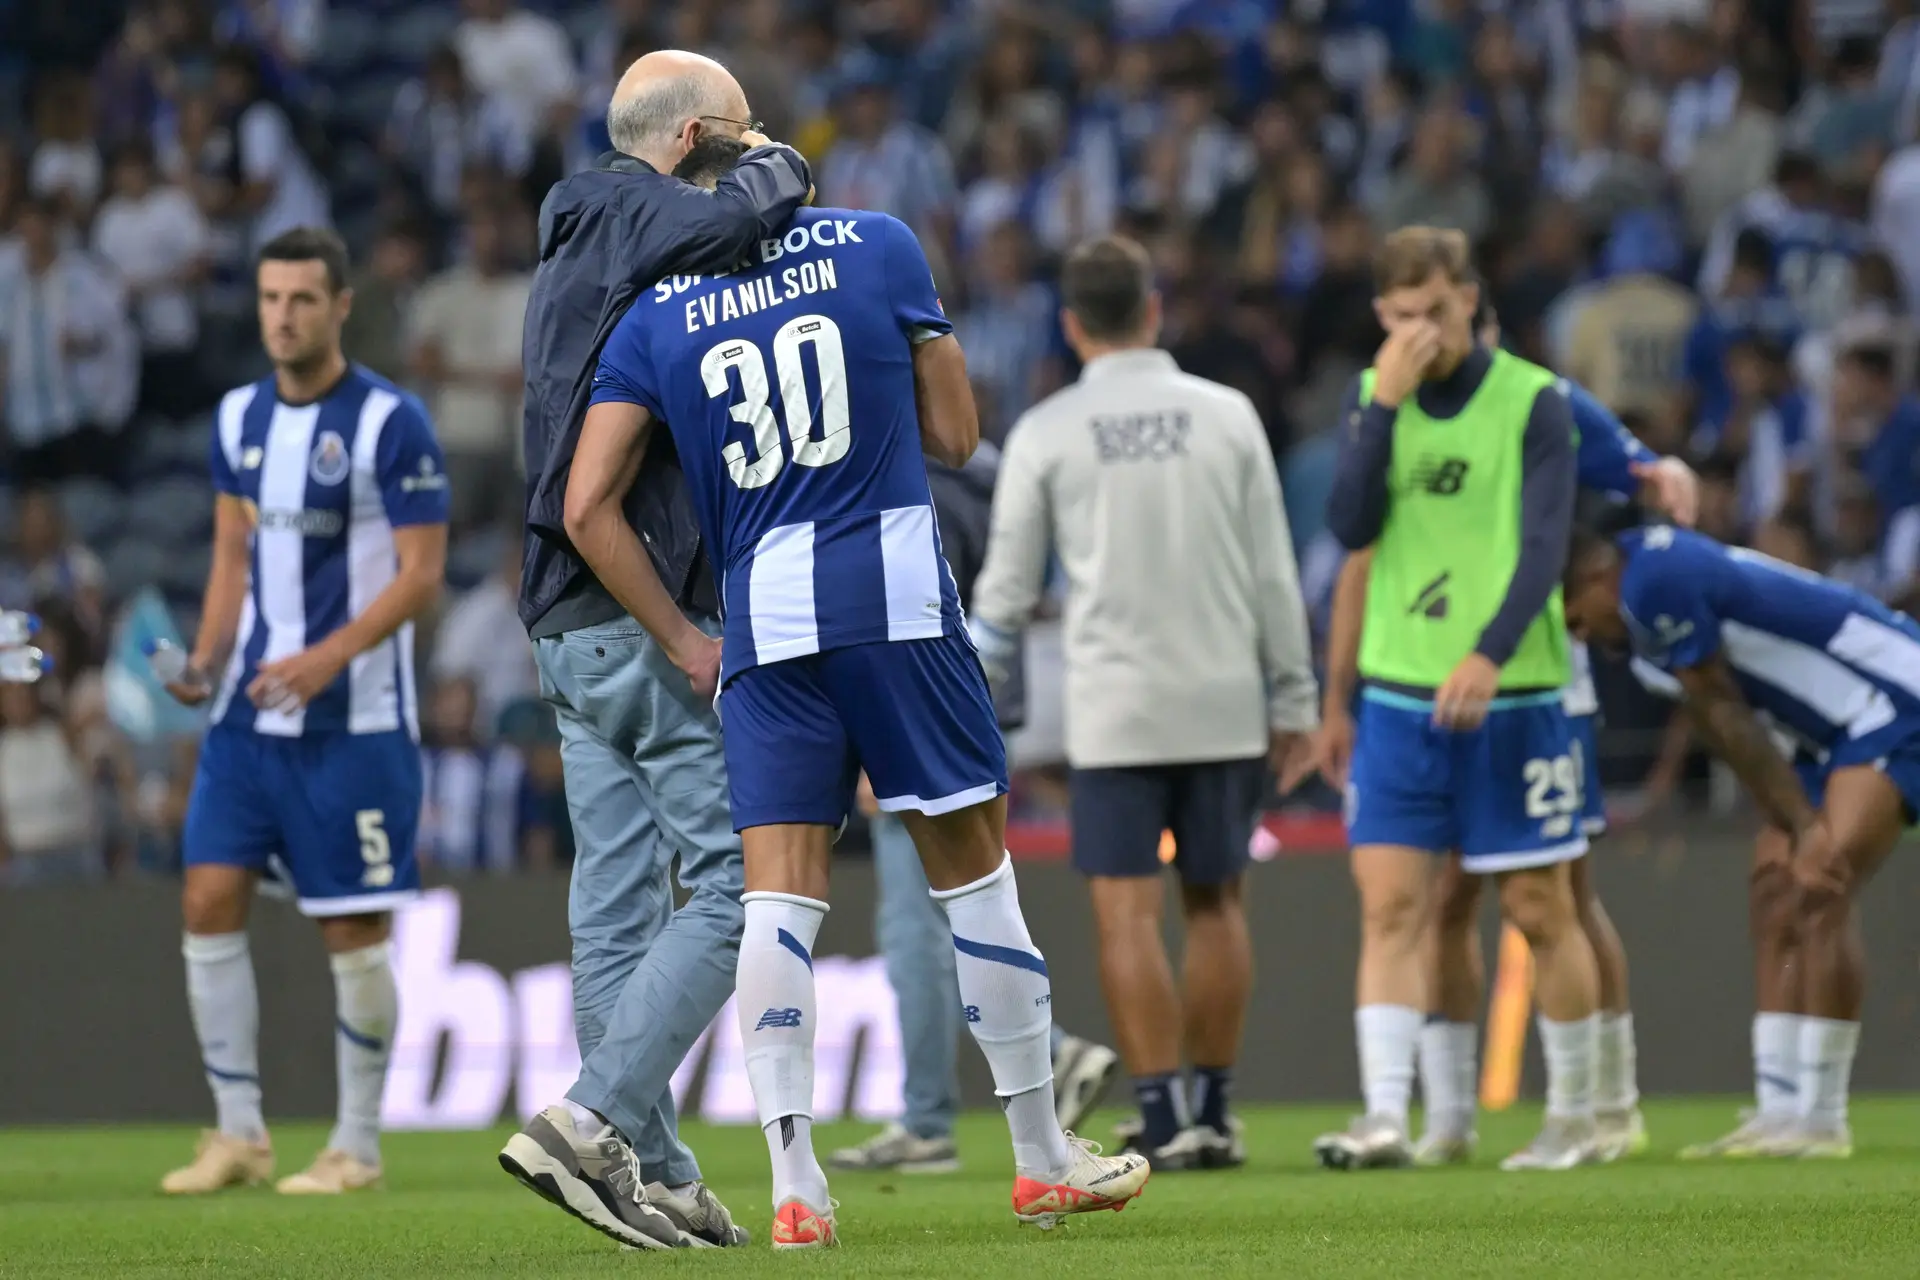 O que falhou no Dragão? Cinco perguntas e respostas sobre o FC Porto-Arouca, Perguntas e respostas